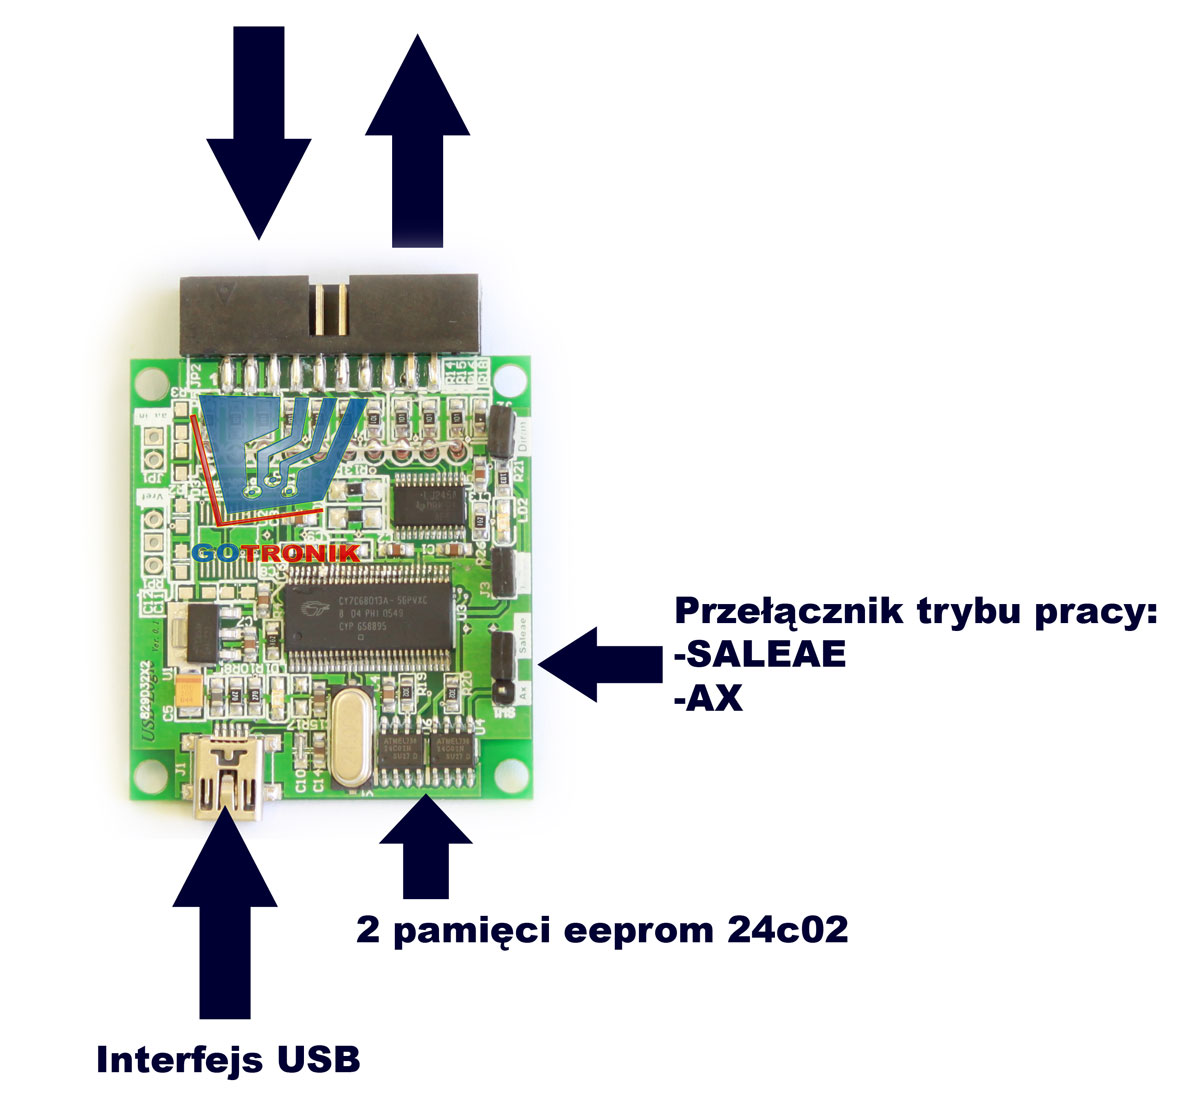 płyta uruchomieniowa USB 2.0 z procesorem Cypress FX2 CY7C68013A-56 umożliwiająca współpracę min. z USBee Ax Pro oraz Saleae 